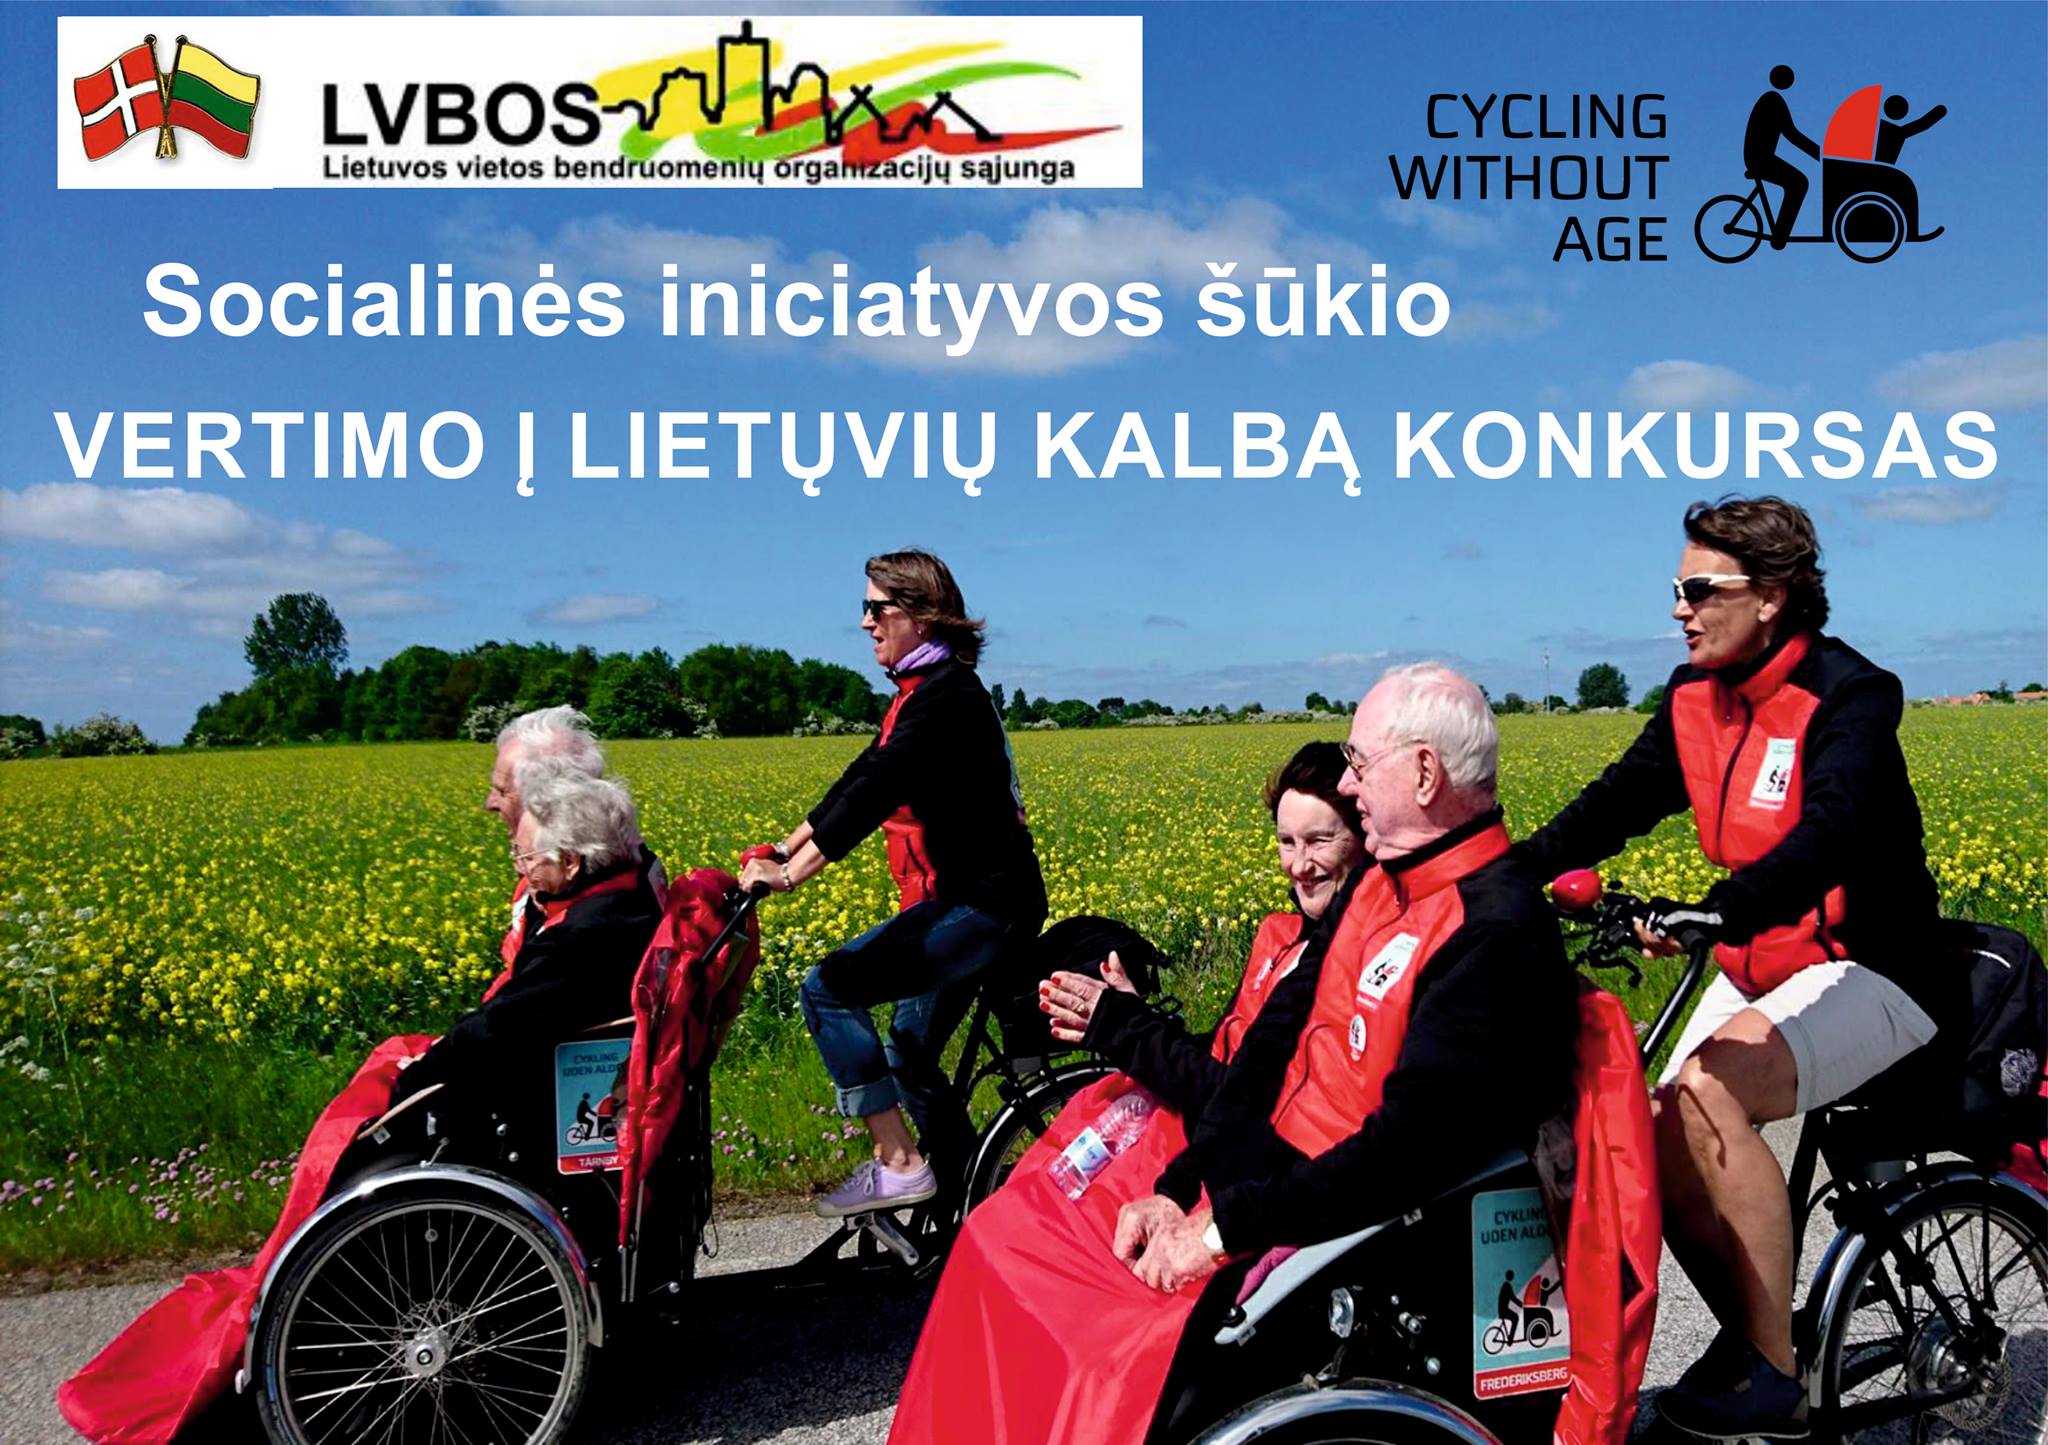 You are currently viewing Kviečiame dalyvauti šūkio “CYCLING WITHOUT AGE” vertimo konkurse